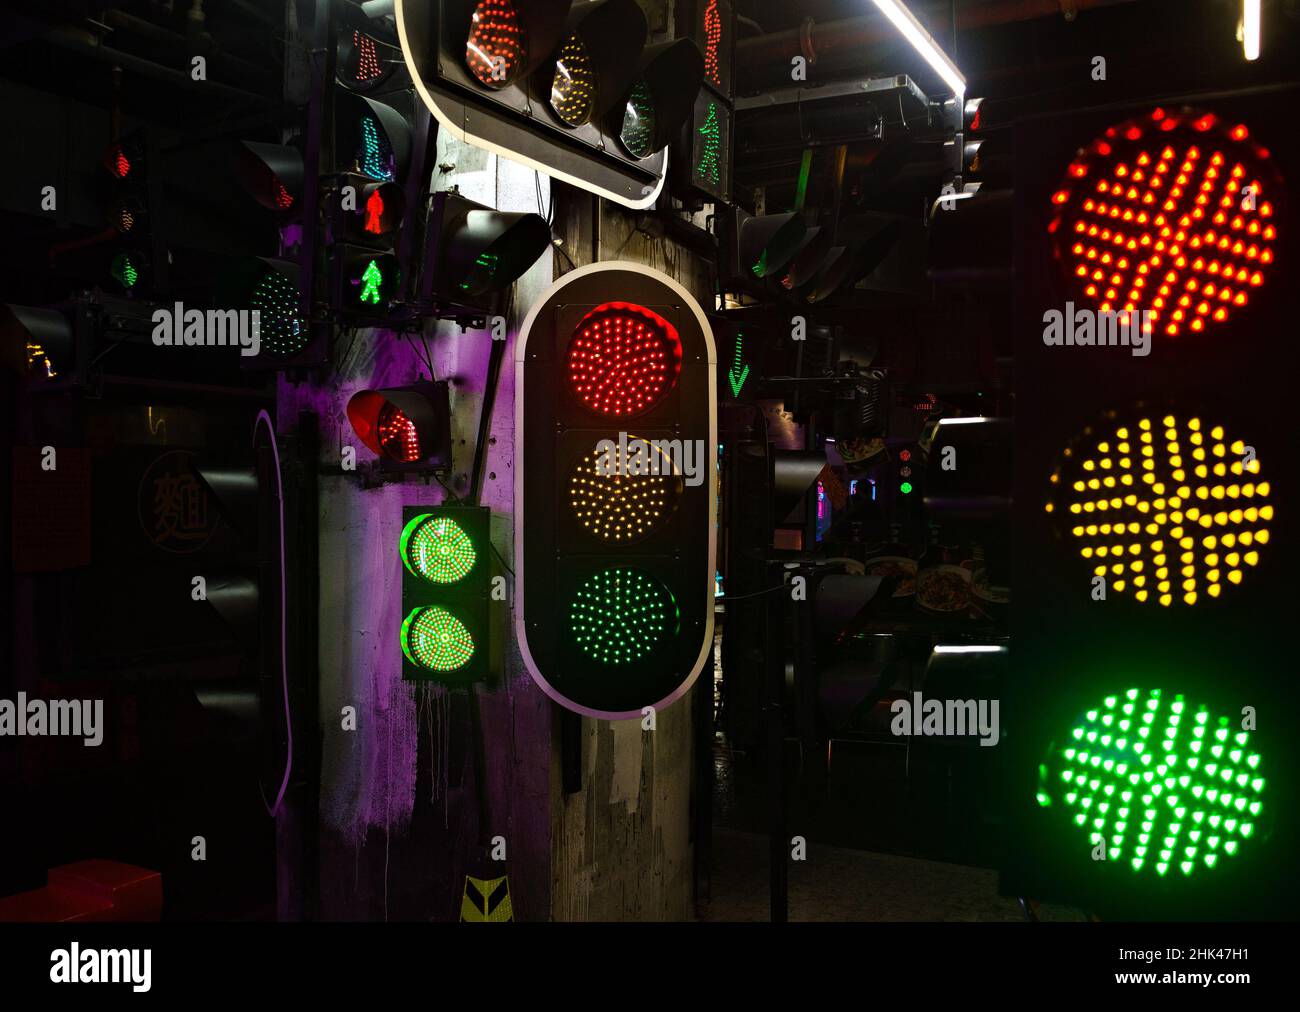 Las luces verdes rojas amarillas se iluminan simultáneamente en la pantalla de varios semáforos Foto de stock